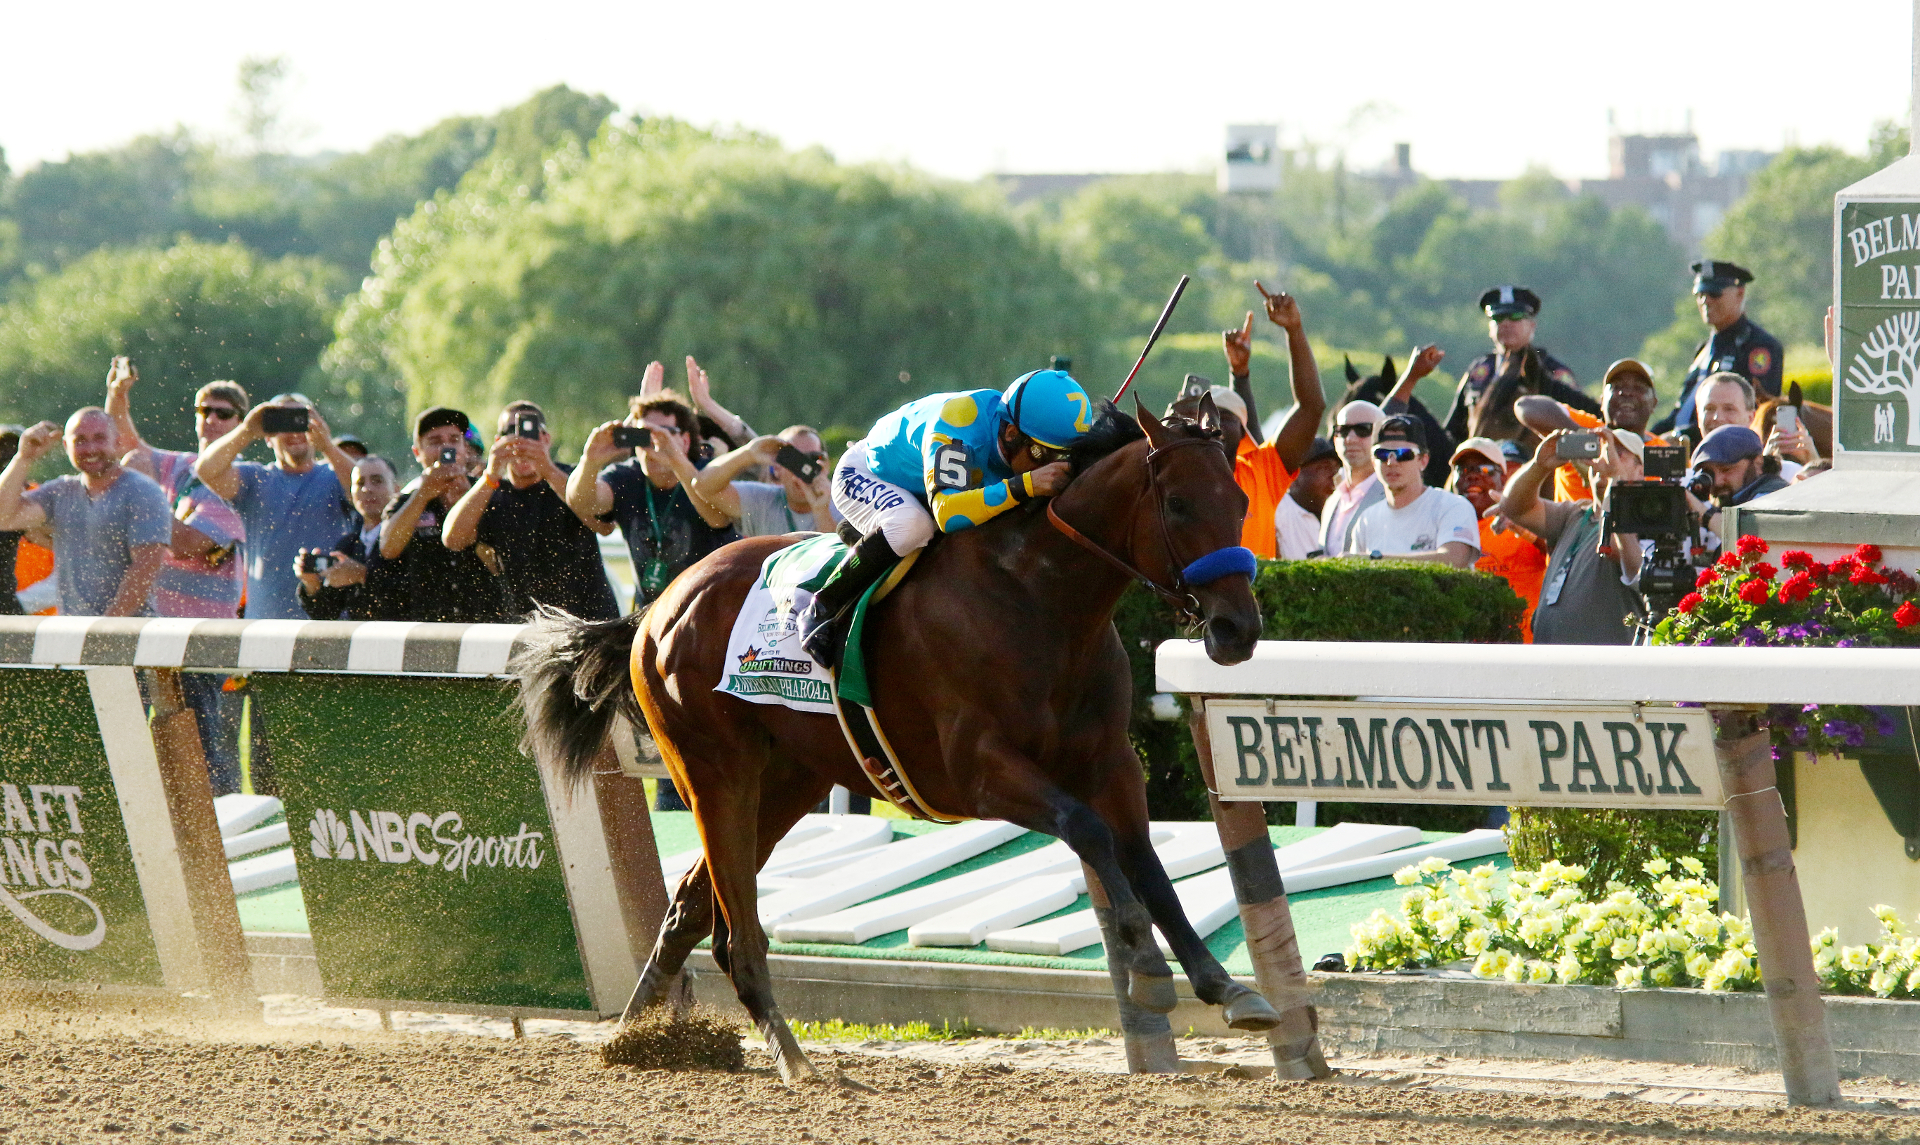 American Pharoah wins 2015 Belmont Stakes